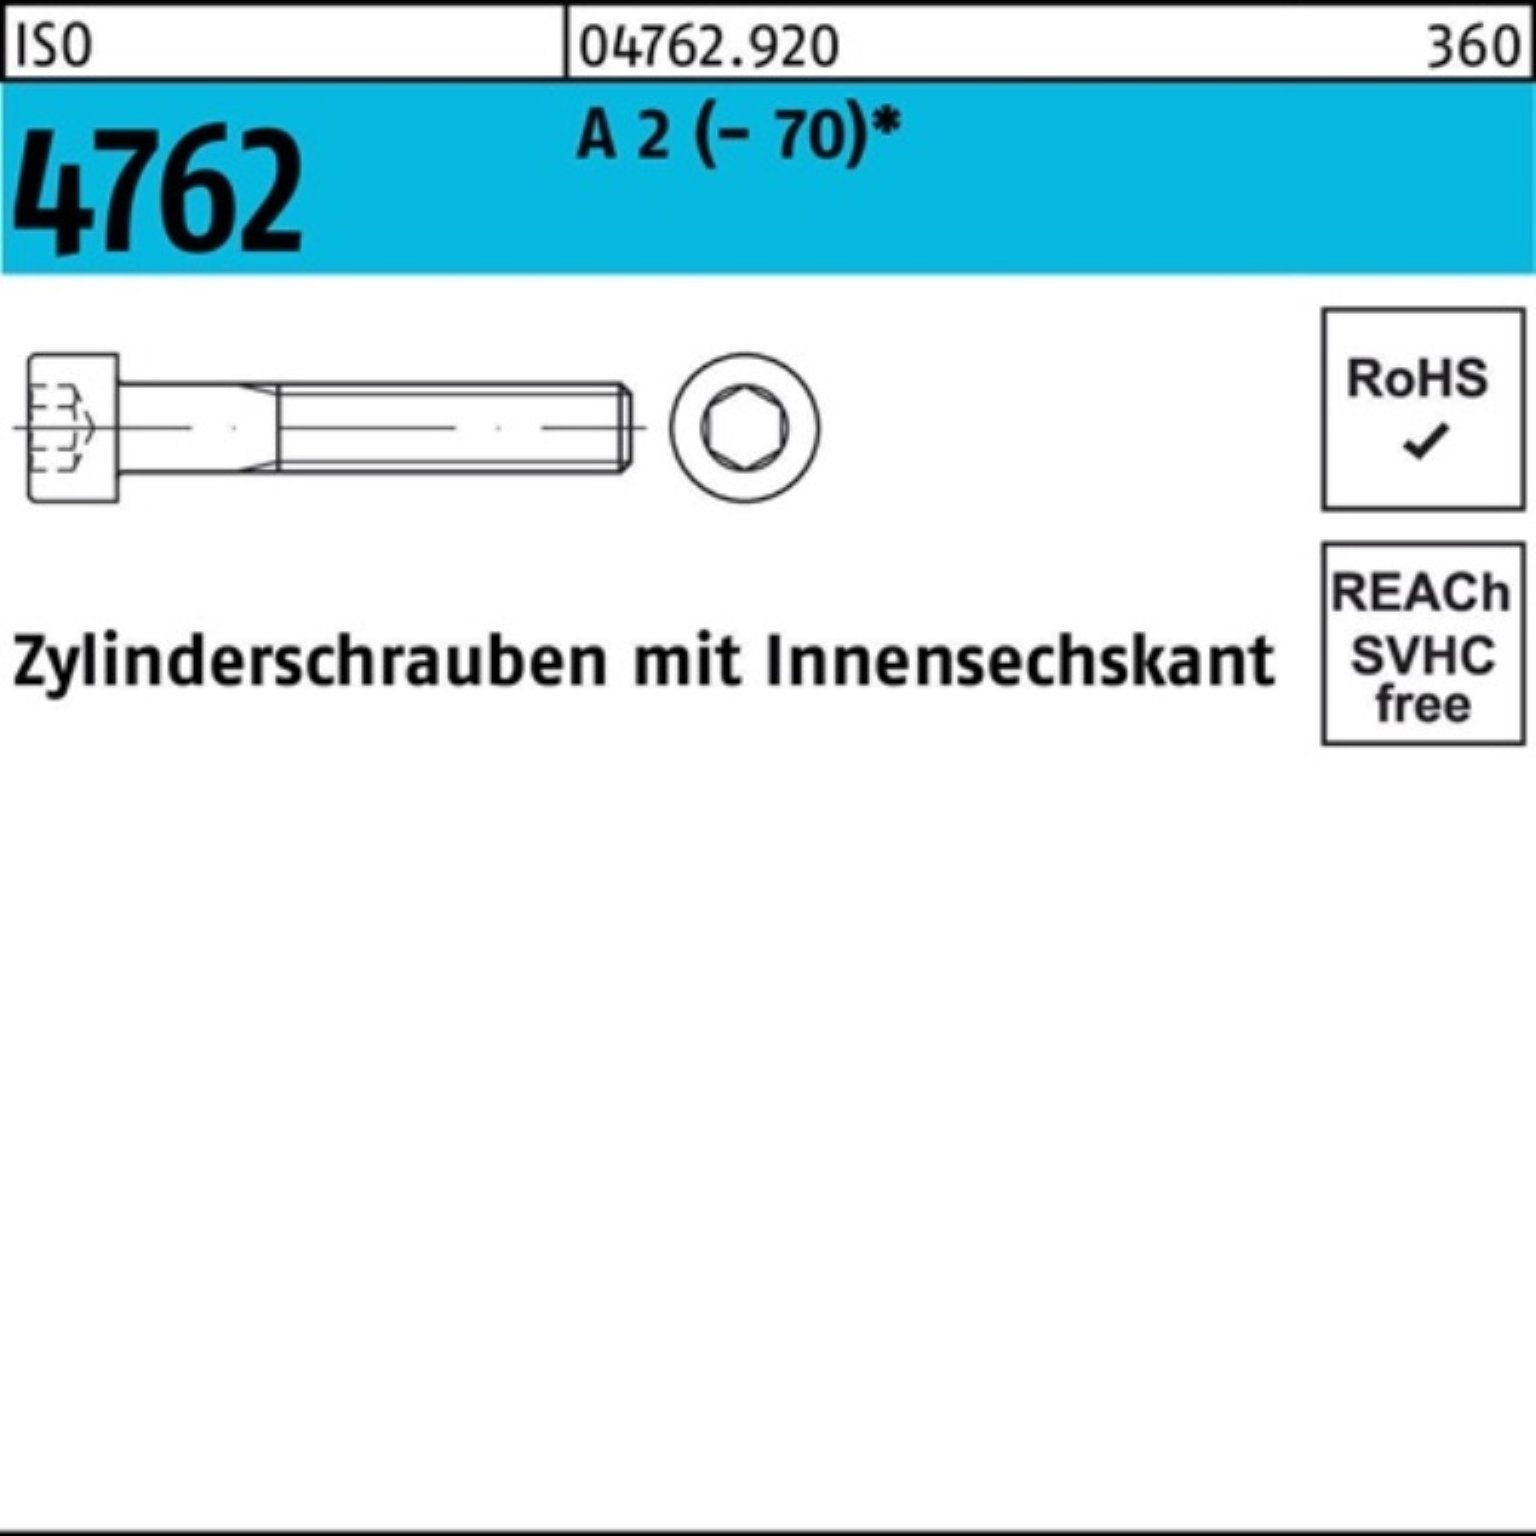 S M20x 1 4762 2 Reyher A Innen-6kt 100er (70) ISO Zylinderschraube Pack Zylinderschraube 140